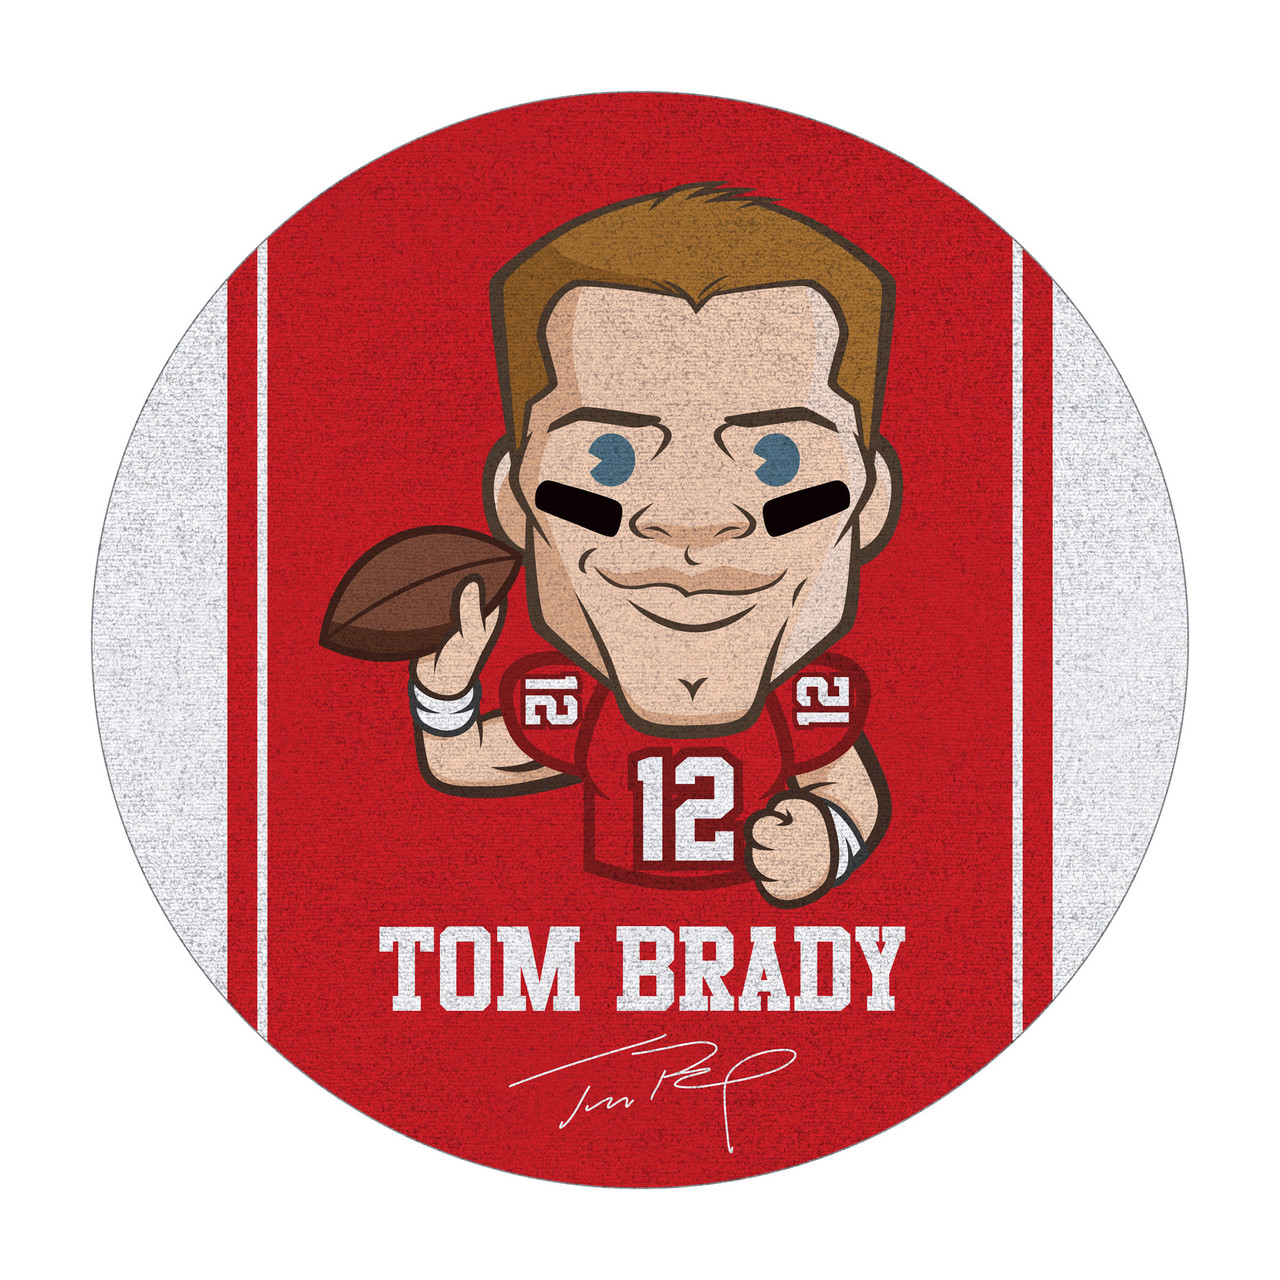 Tom Brady 64" Round Area Rug